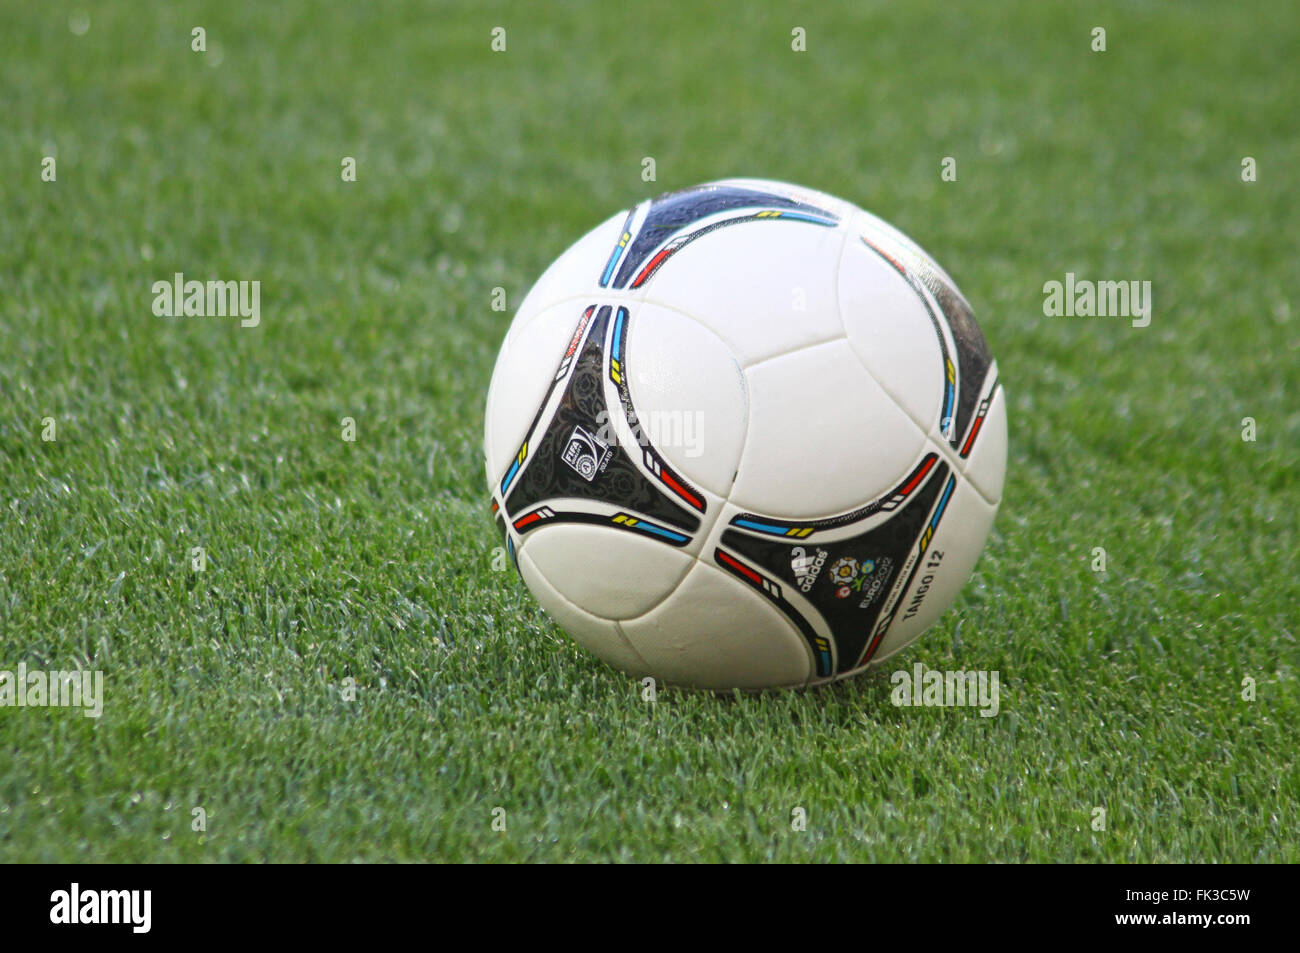 Kiev, Ucraina - 10 Maggio 2012: Close-up ufficiale UEFA European Championship 2012 (Euro 2012) sfera sull'erba durante il gioco essere Foto Stock